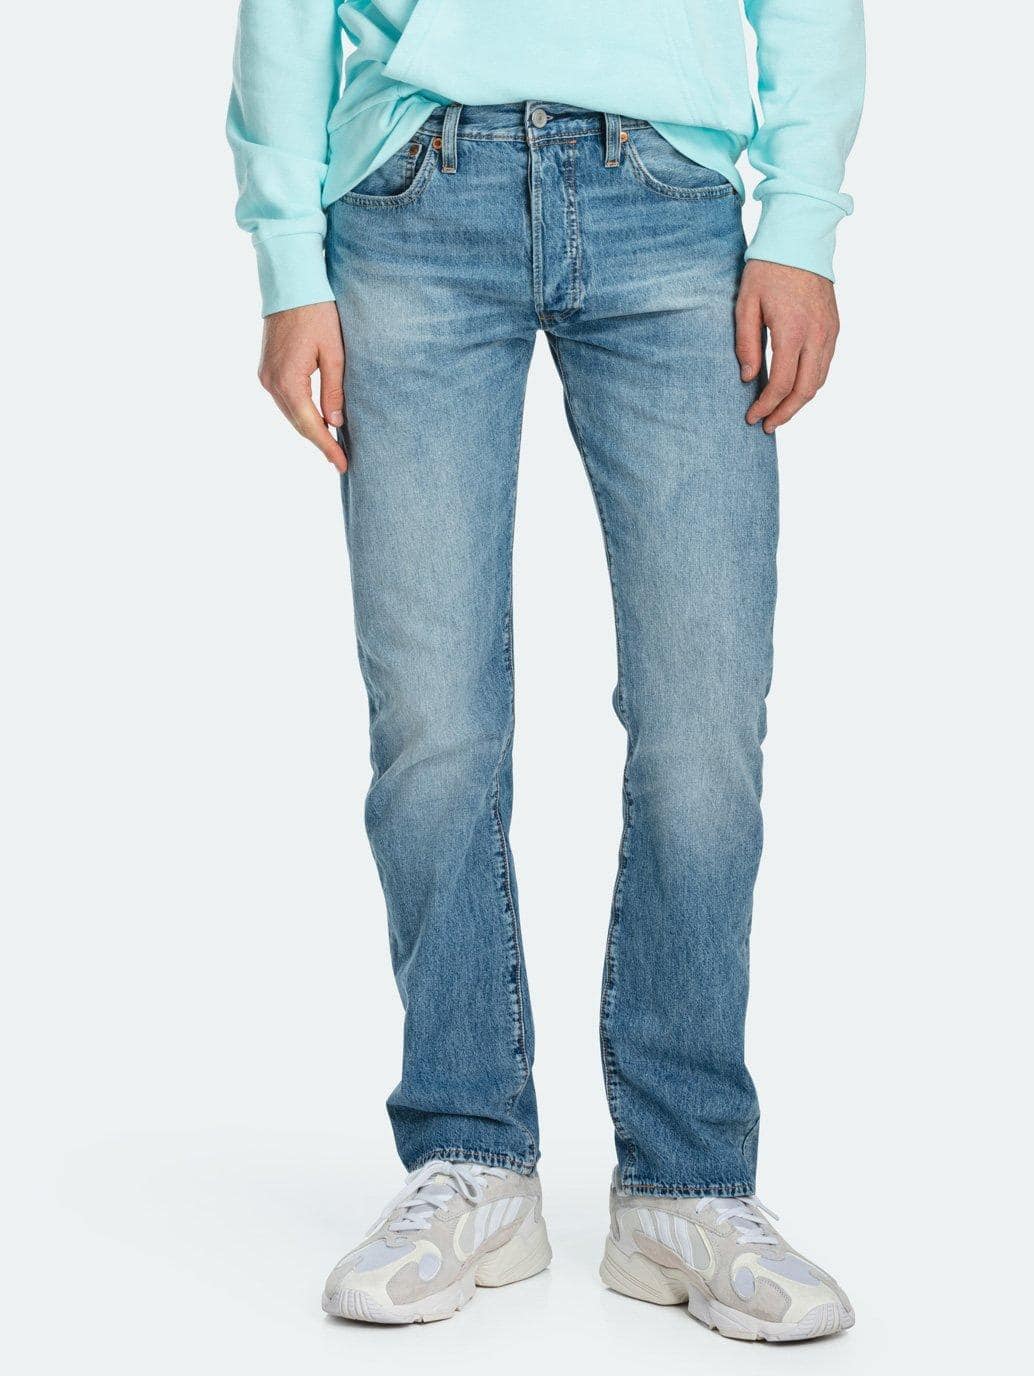 Levi's® MY 501® Original Fit Jeans for Men - 005012965